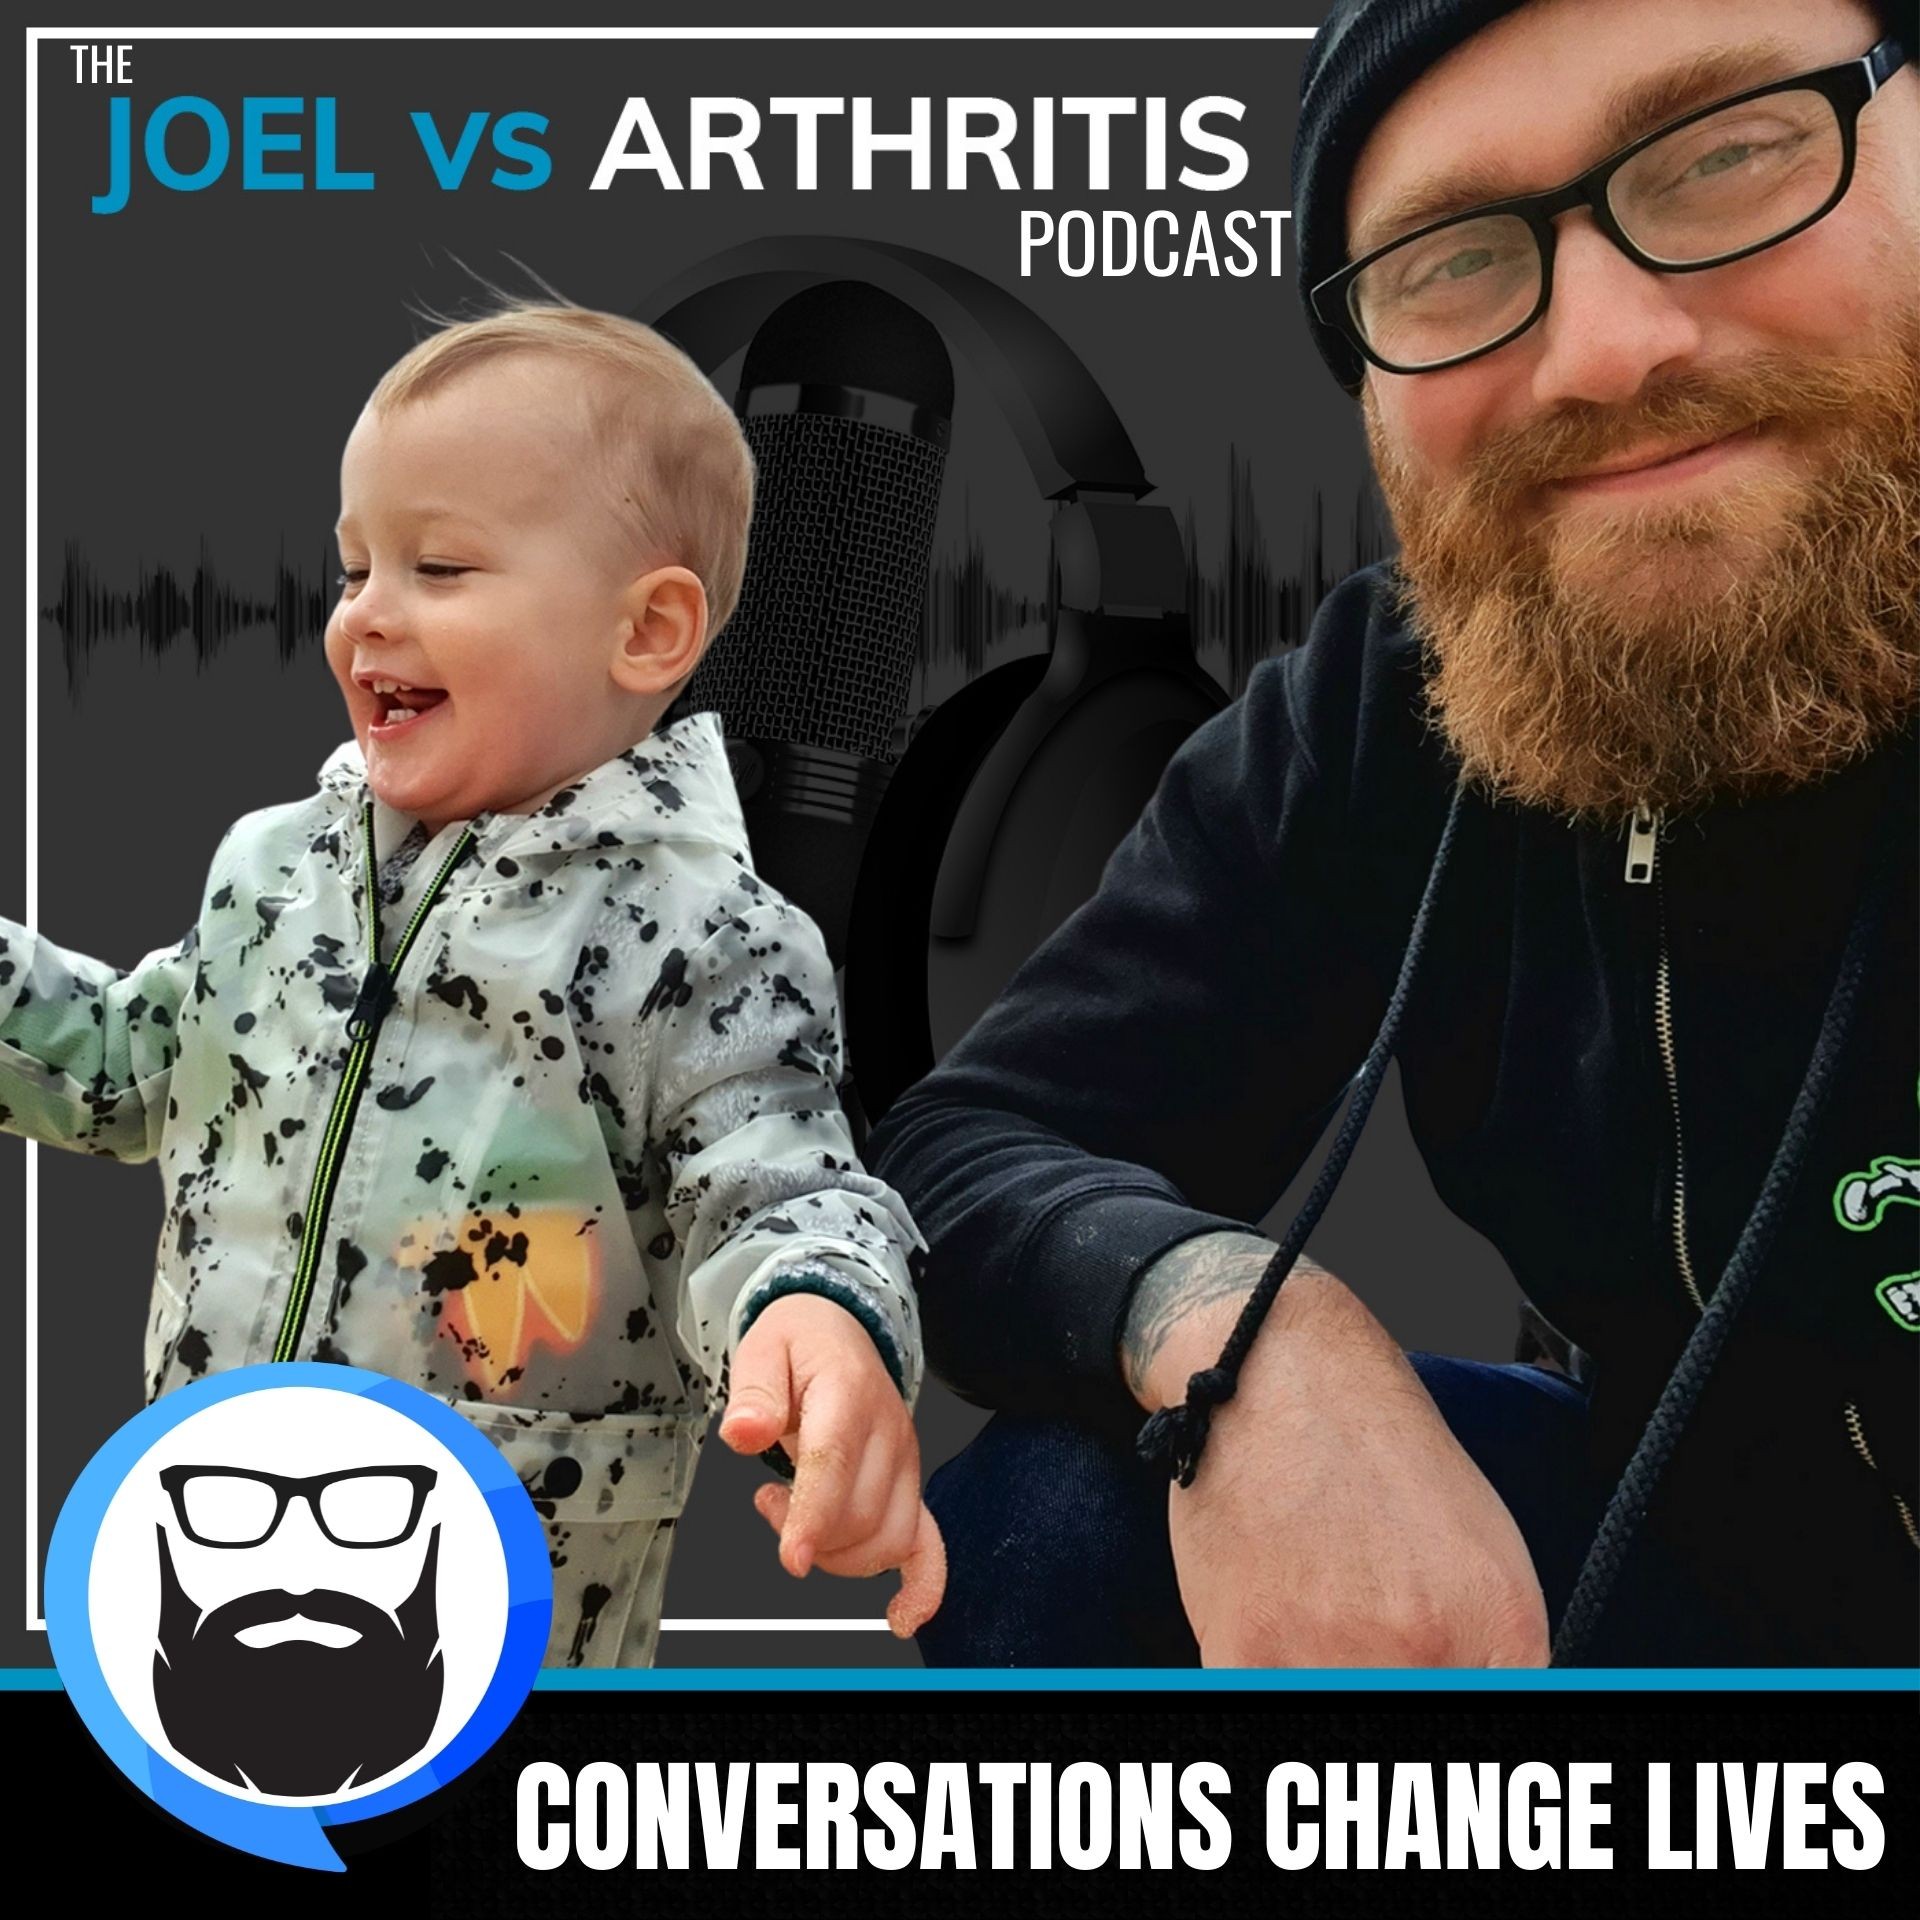 Joel vs Arthritis